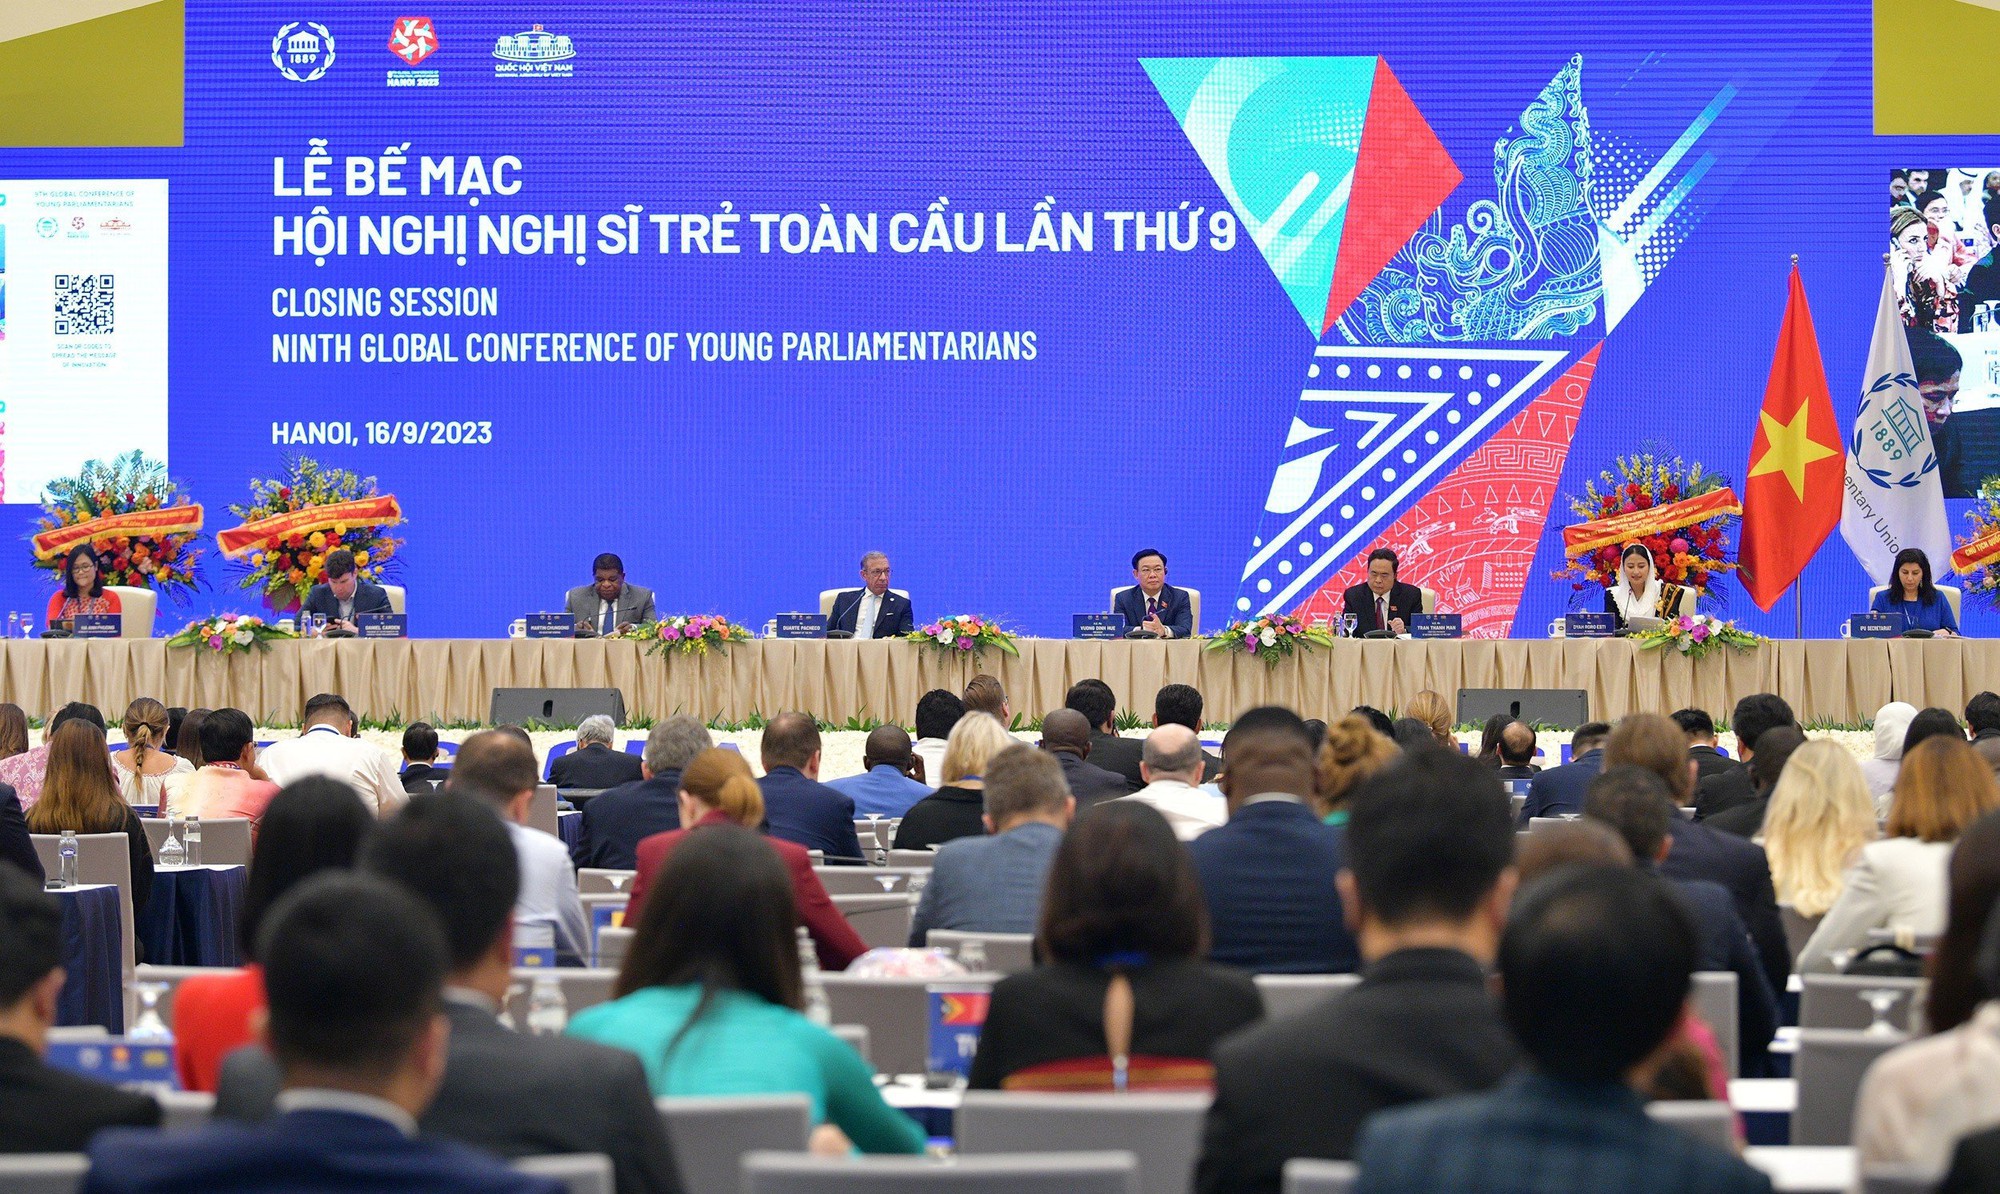 Hội nghị Nghị sĩ trẻ toàn cầu lần thứ 9 đã khẳng định những đóng góp thực chất, hiệu quả của Quốc hội Việt Nam - Ảnh 3.